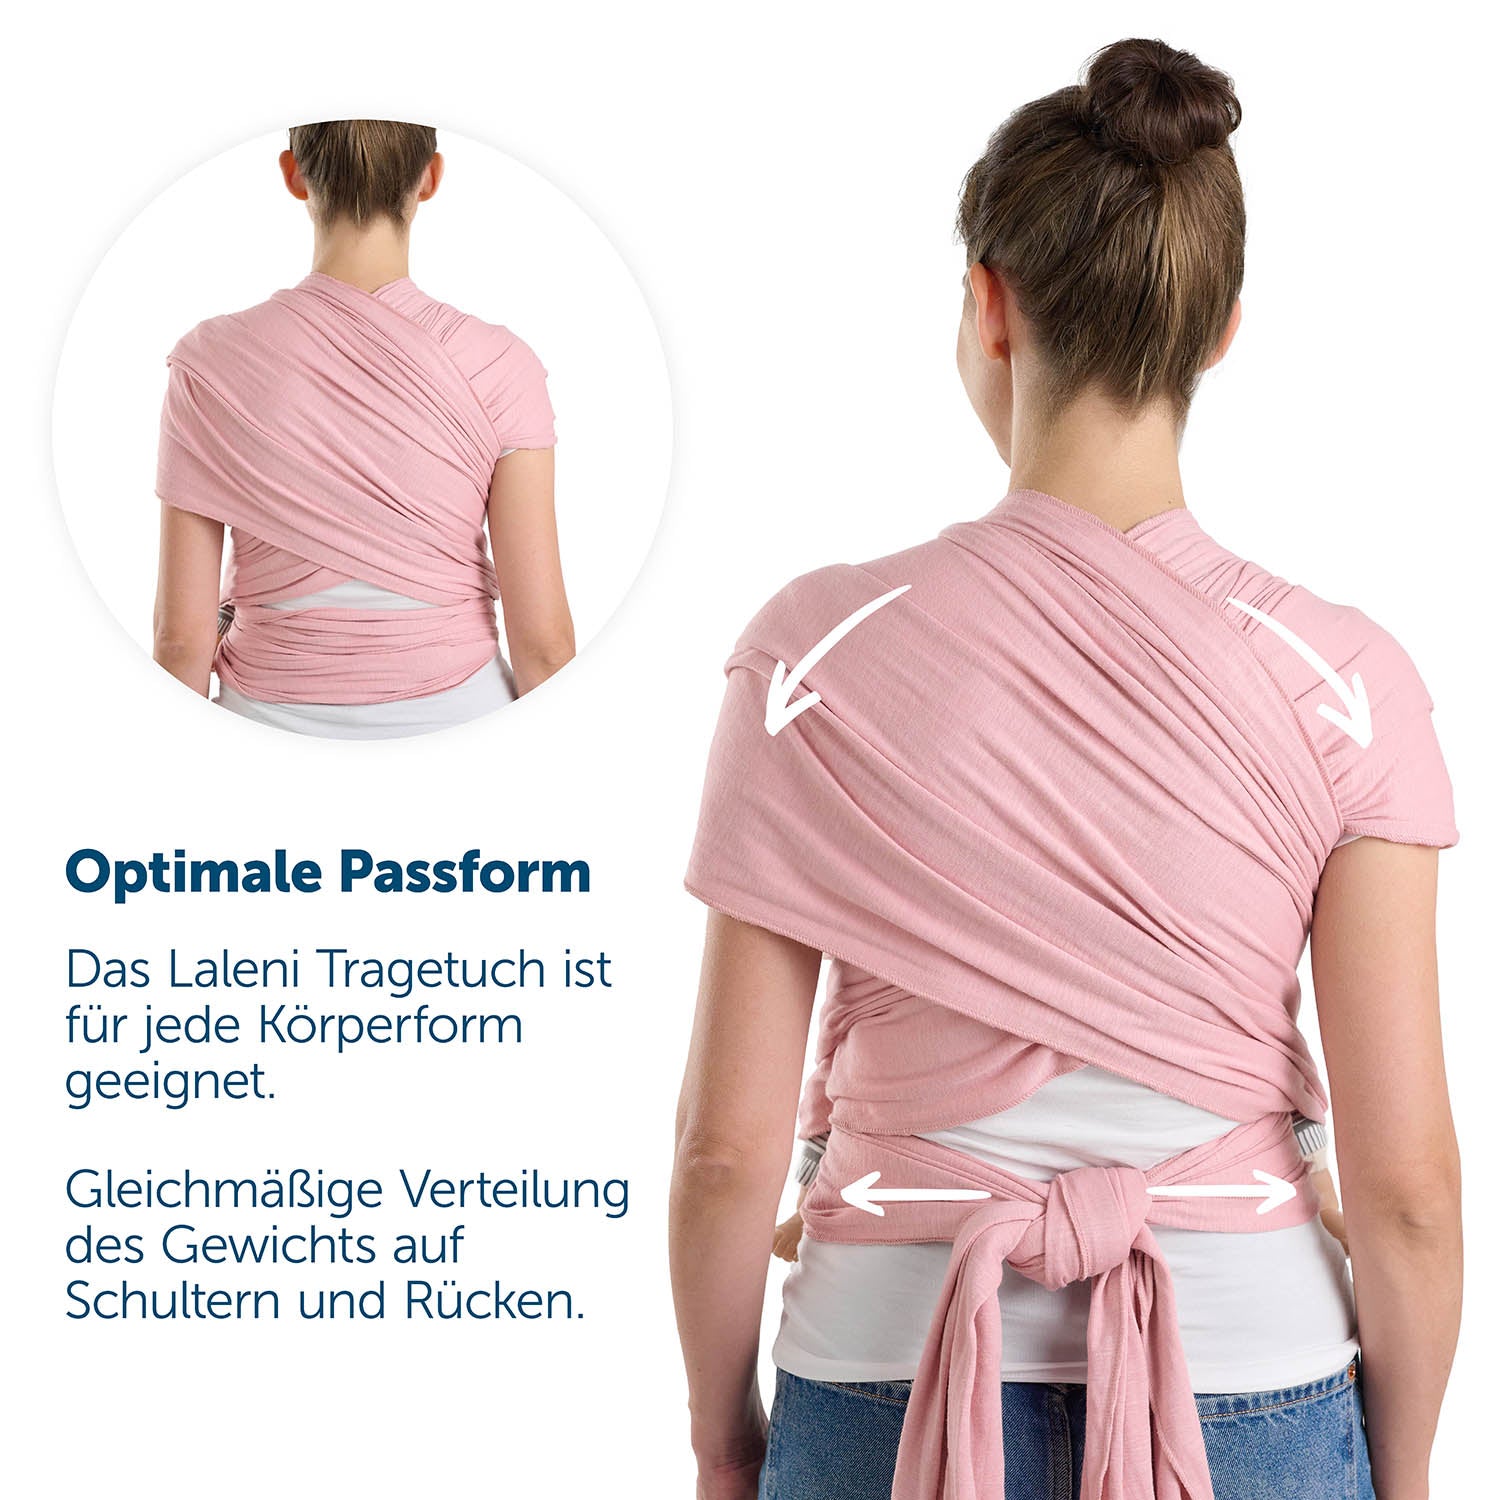 Rückenansicht einer Frau in roter Tragetuch mit Hinweisen zur optimalen Passform und Gewichtsverteilung.